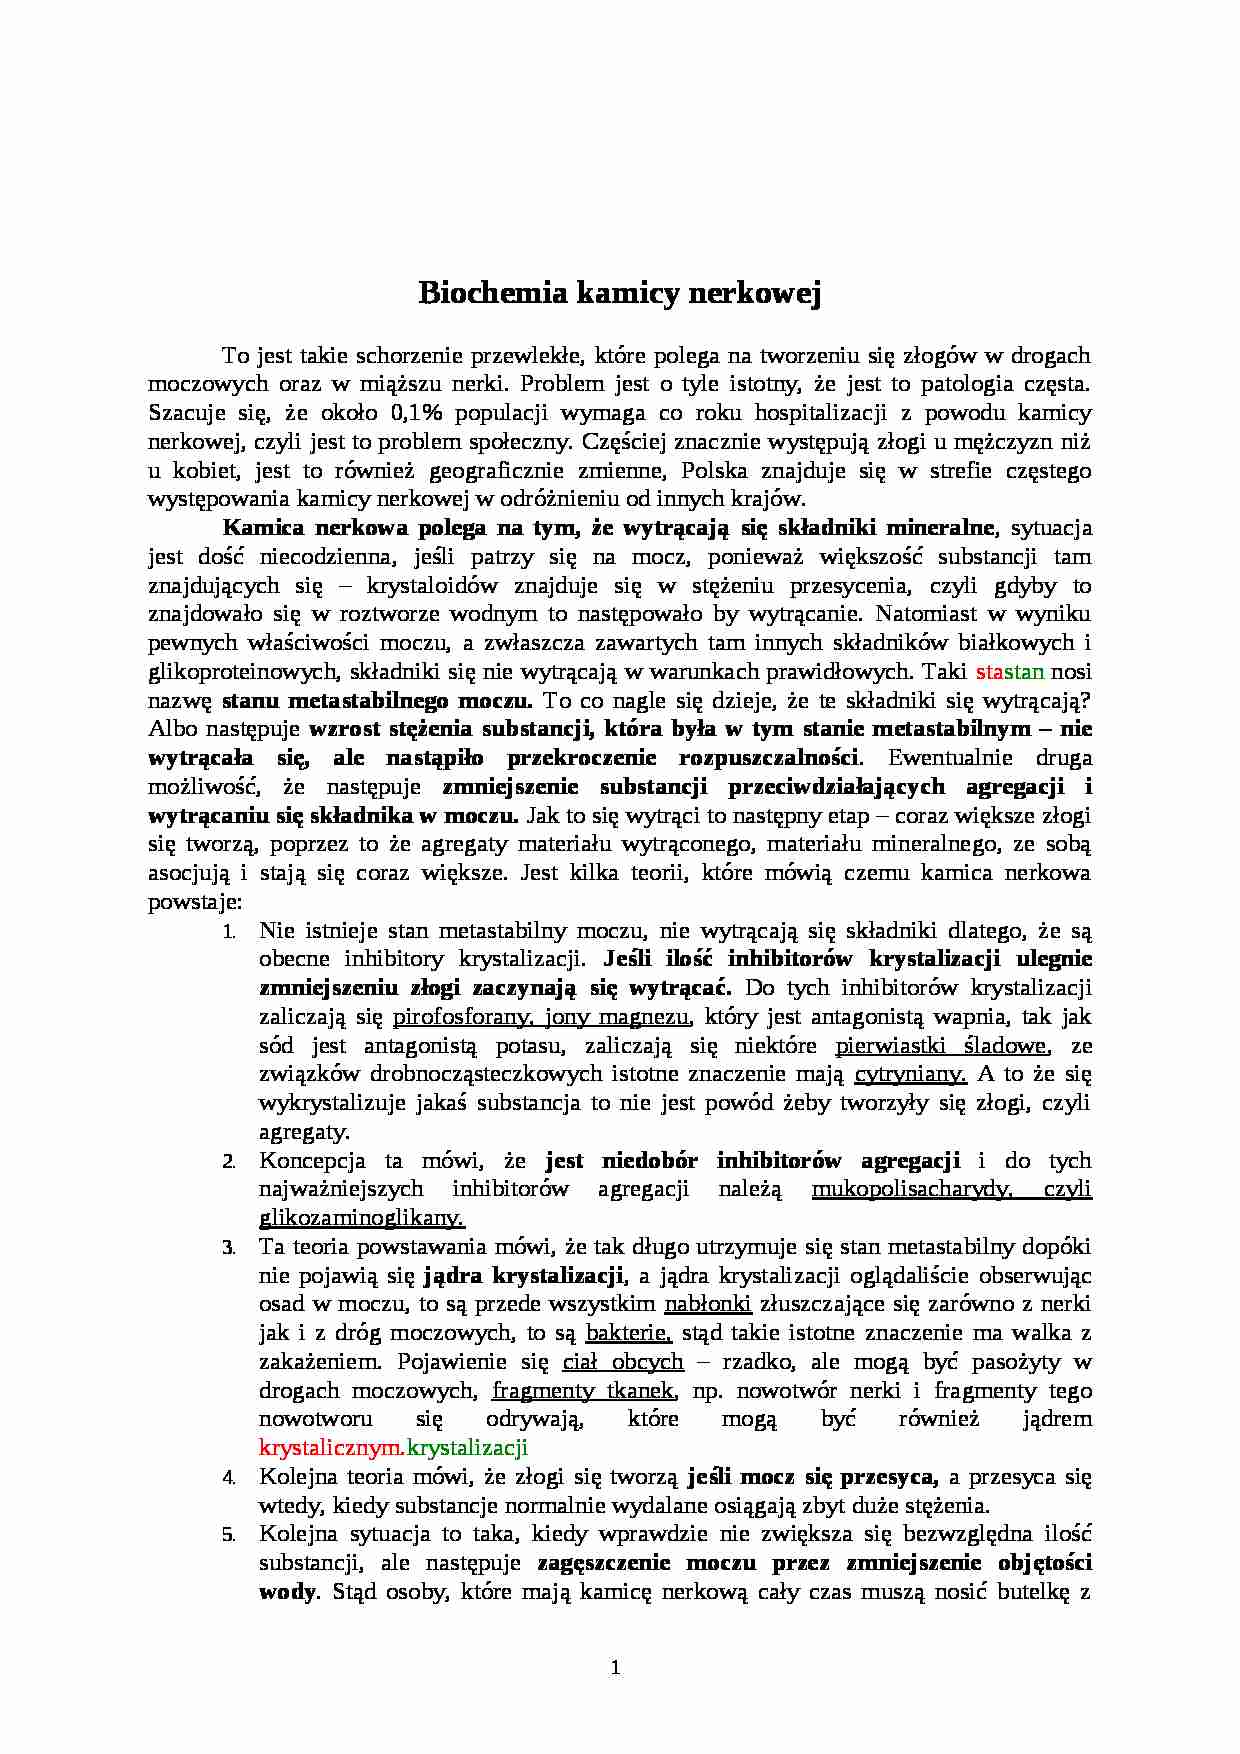 Biochemia kamicy nerkowej - wykład - strona 1